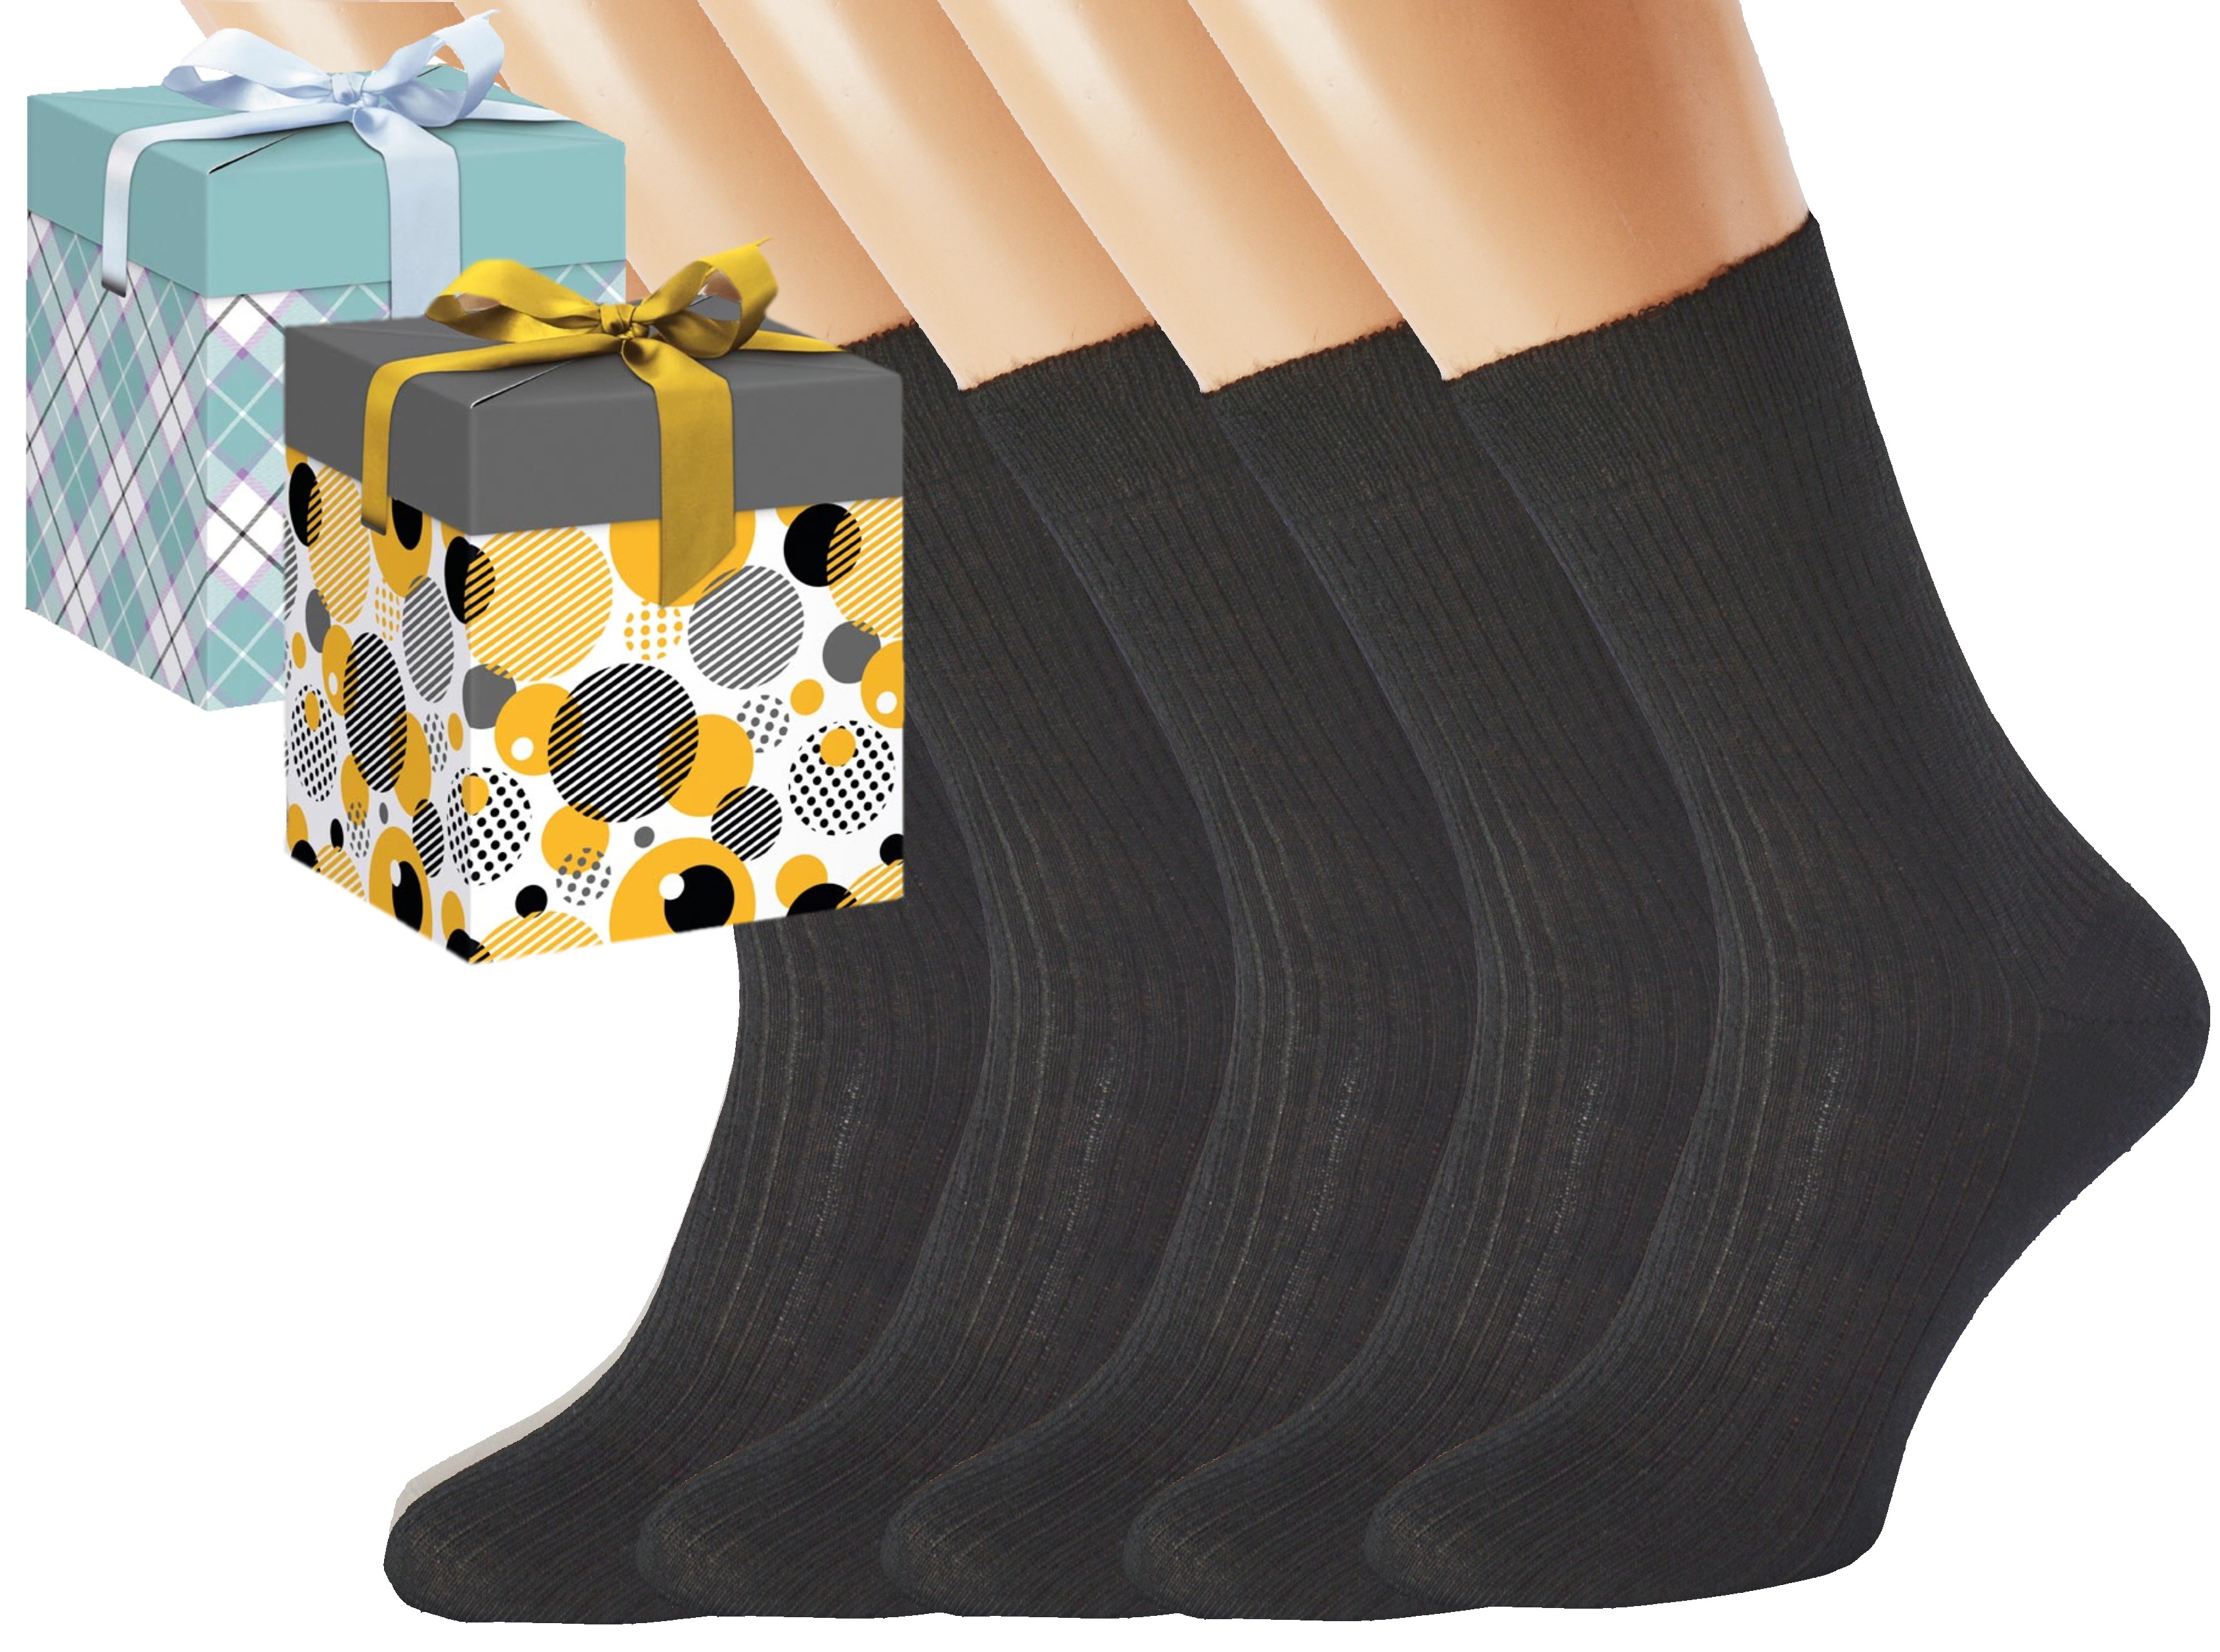 Dárkové balení merino zdravotních ponožek LUKÁŠ KUKS Barva: Černé, Velikost: EUR 43-45 (UK 9-10), Zvolte variantu dárkového balení: Mint kostkovaná